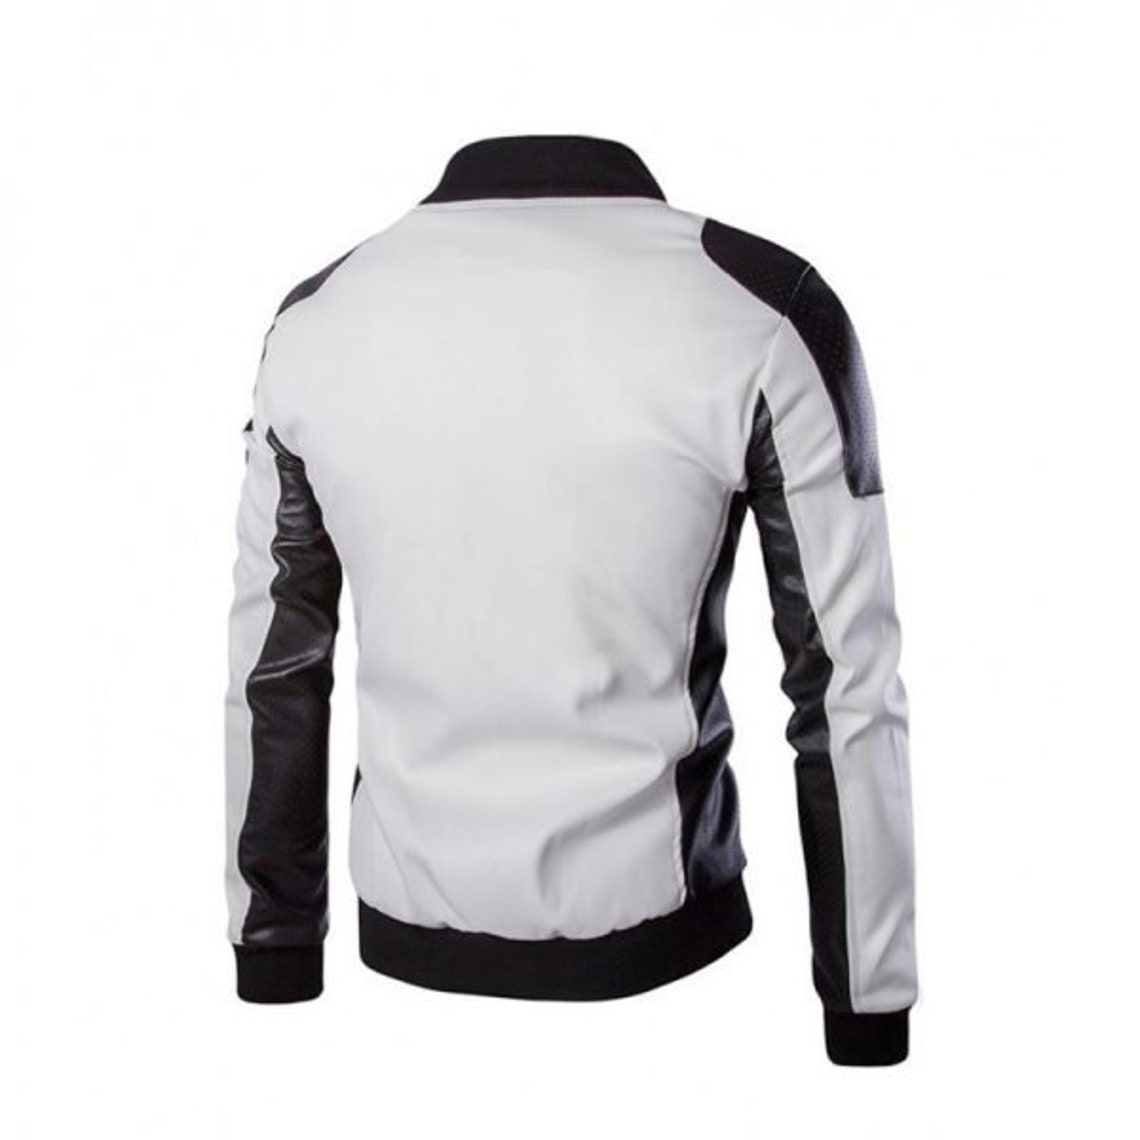 Mens Fashion Motorcycle Biker Leather Jacket White Leather | Etsy